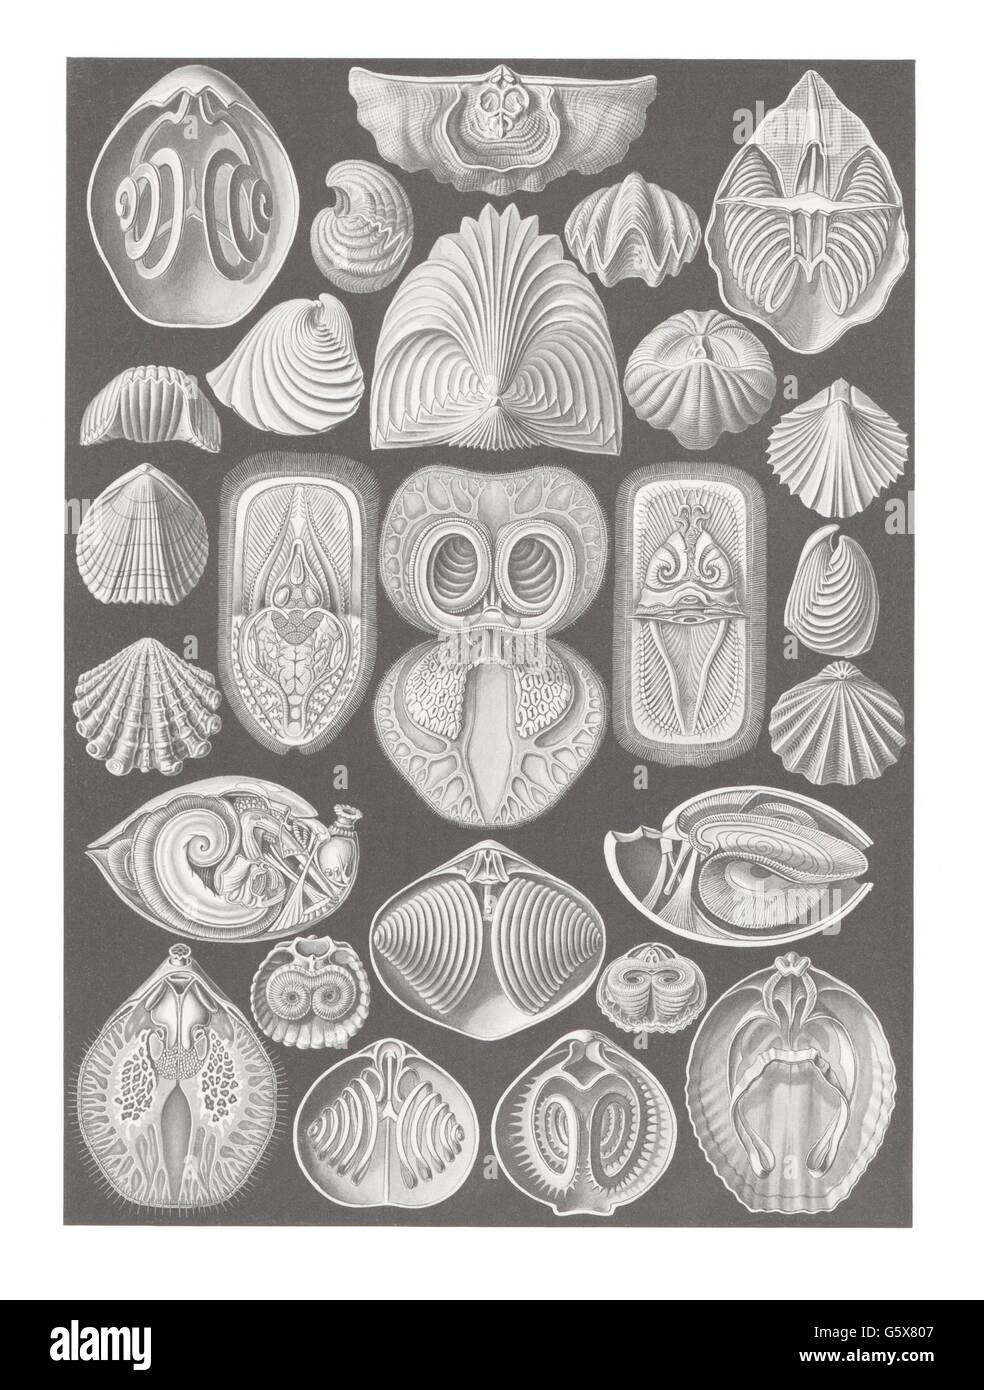 zoologia / Animali, brachiopodi (Brachiopoda), litografia a colori, su: Ernst Haeckel, Kunstformen der Natur, Leipzig - Vienna, 1899 - 1904, diritti-aggiuntivi-non disponibili Foto Stock